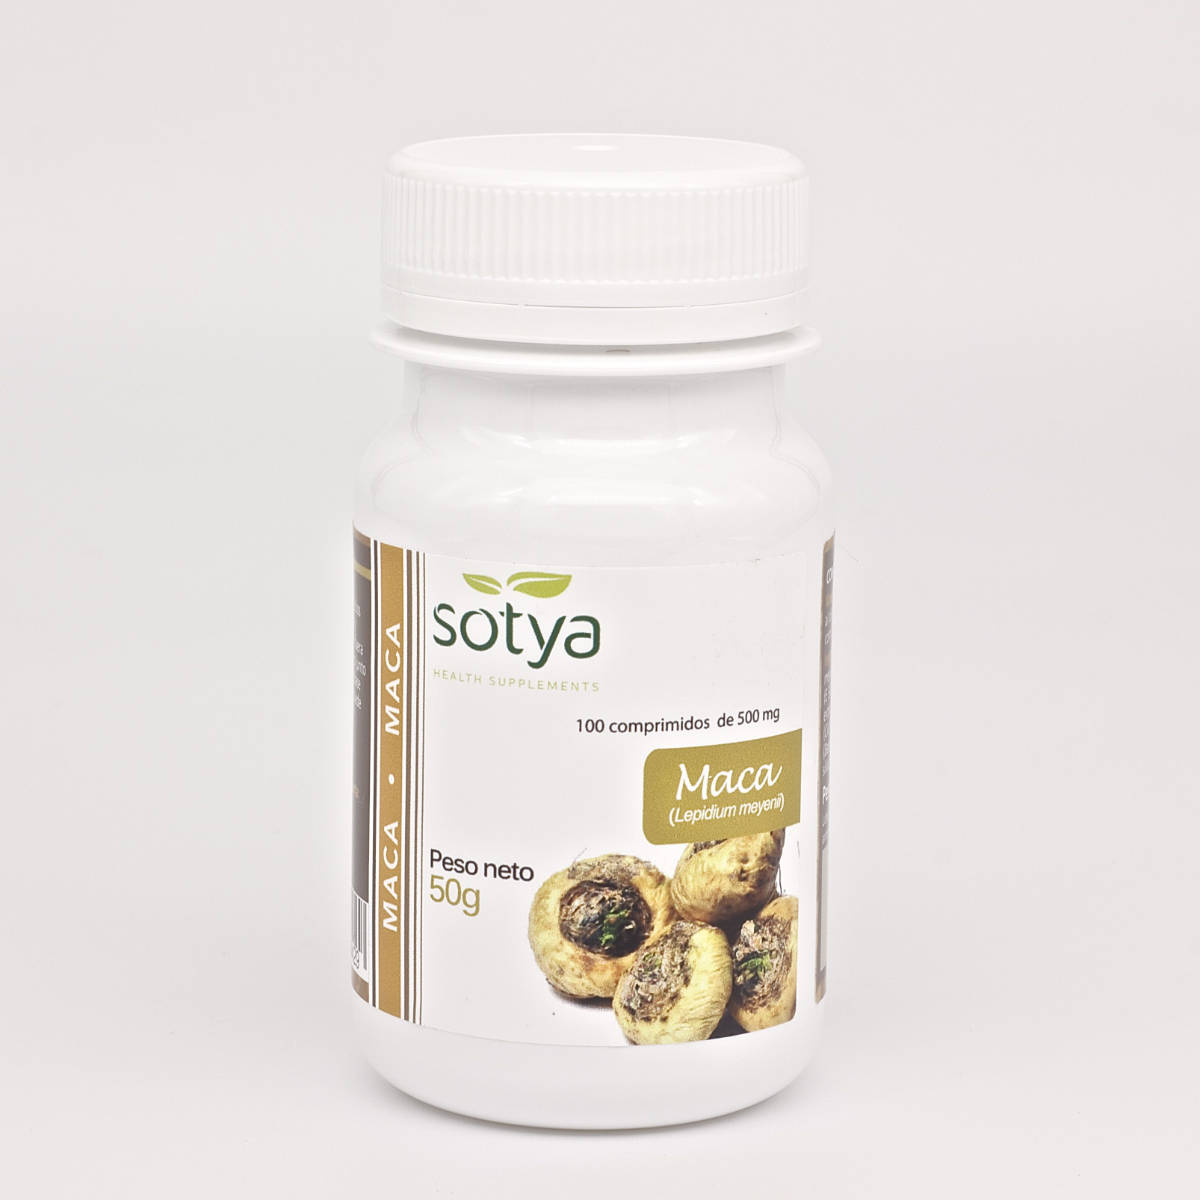 Sotya-Maca-100-Comprimidos-Biopharmacia,-Parafarmacia-online